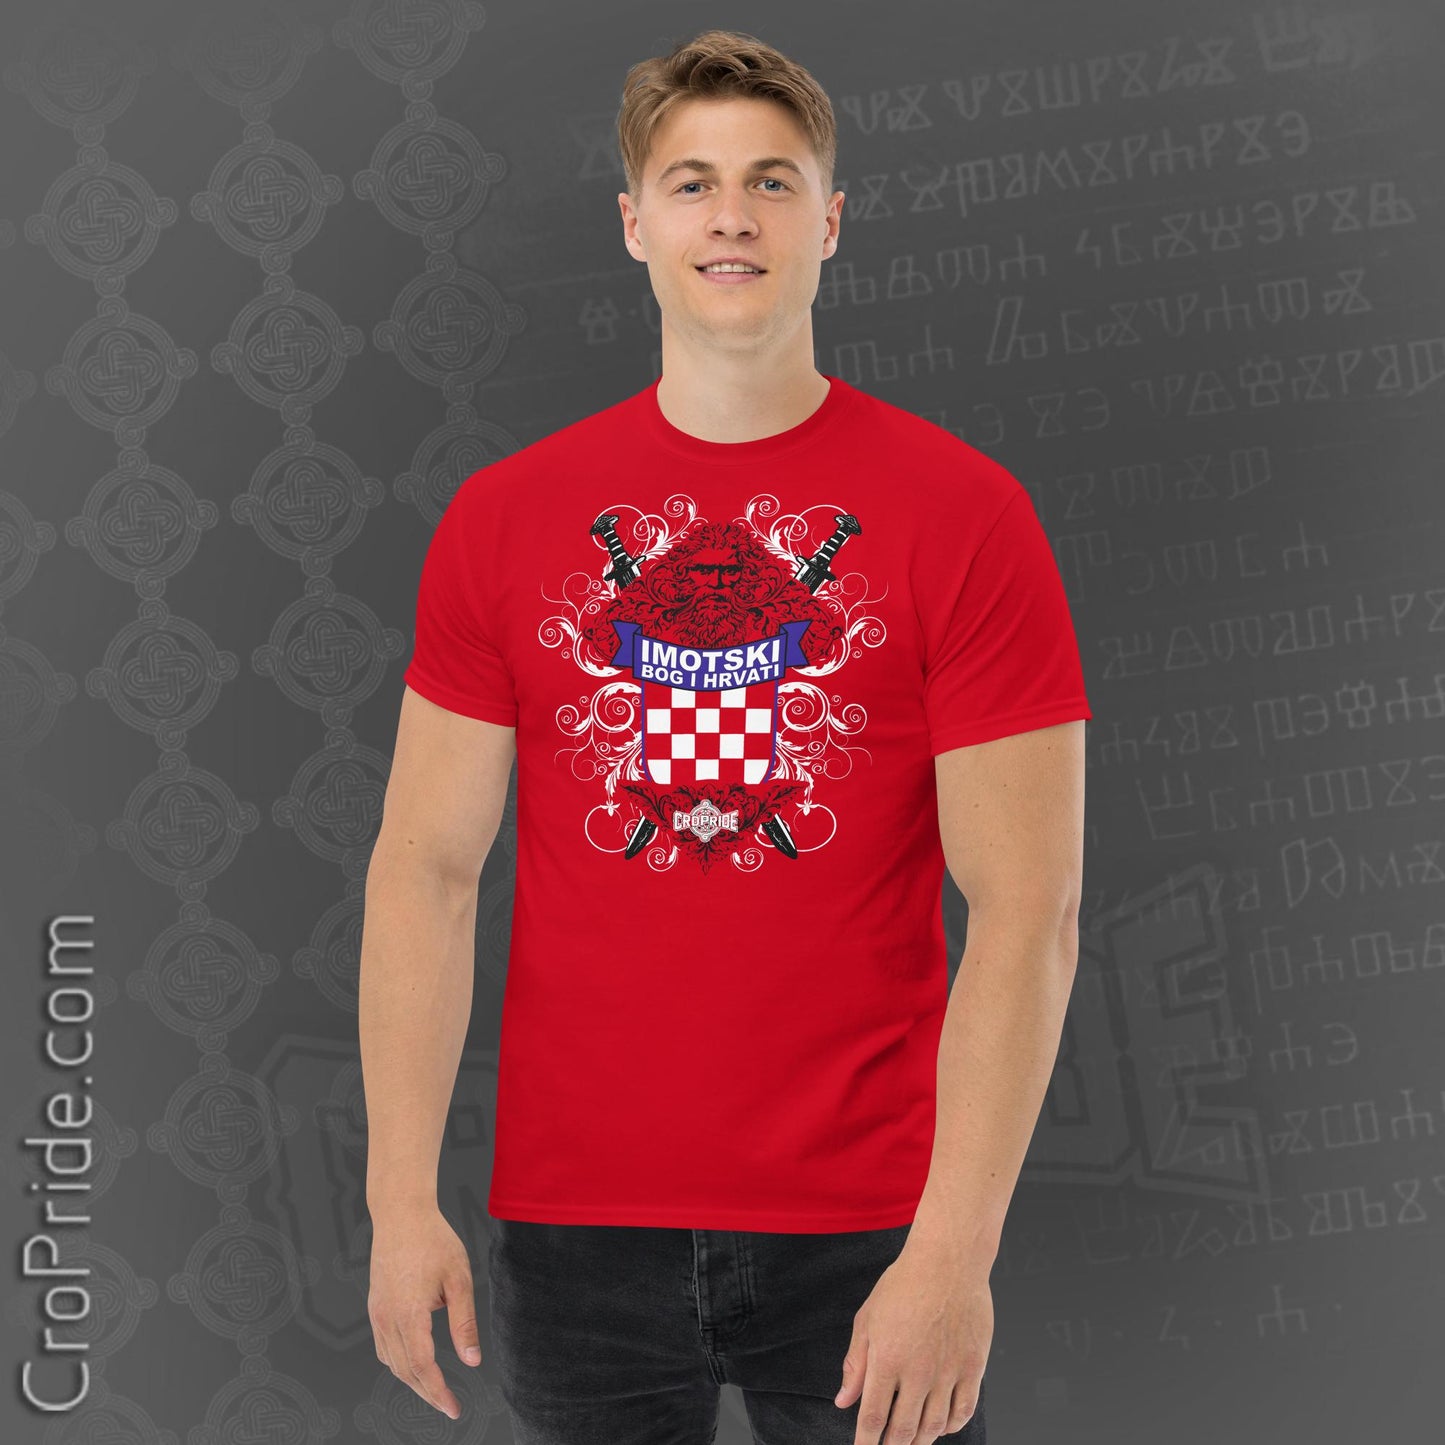 Imotski T-Shirt for Men - Croatian Heritage Design with "Bog I Hrvati" Statement